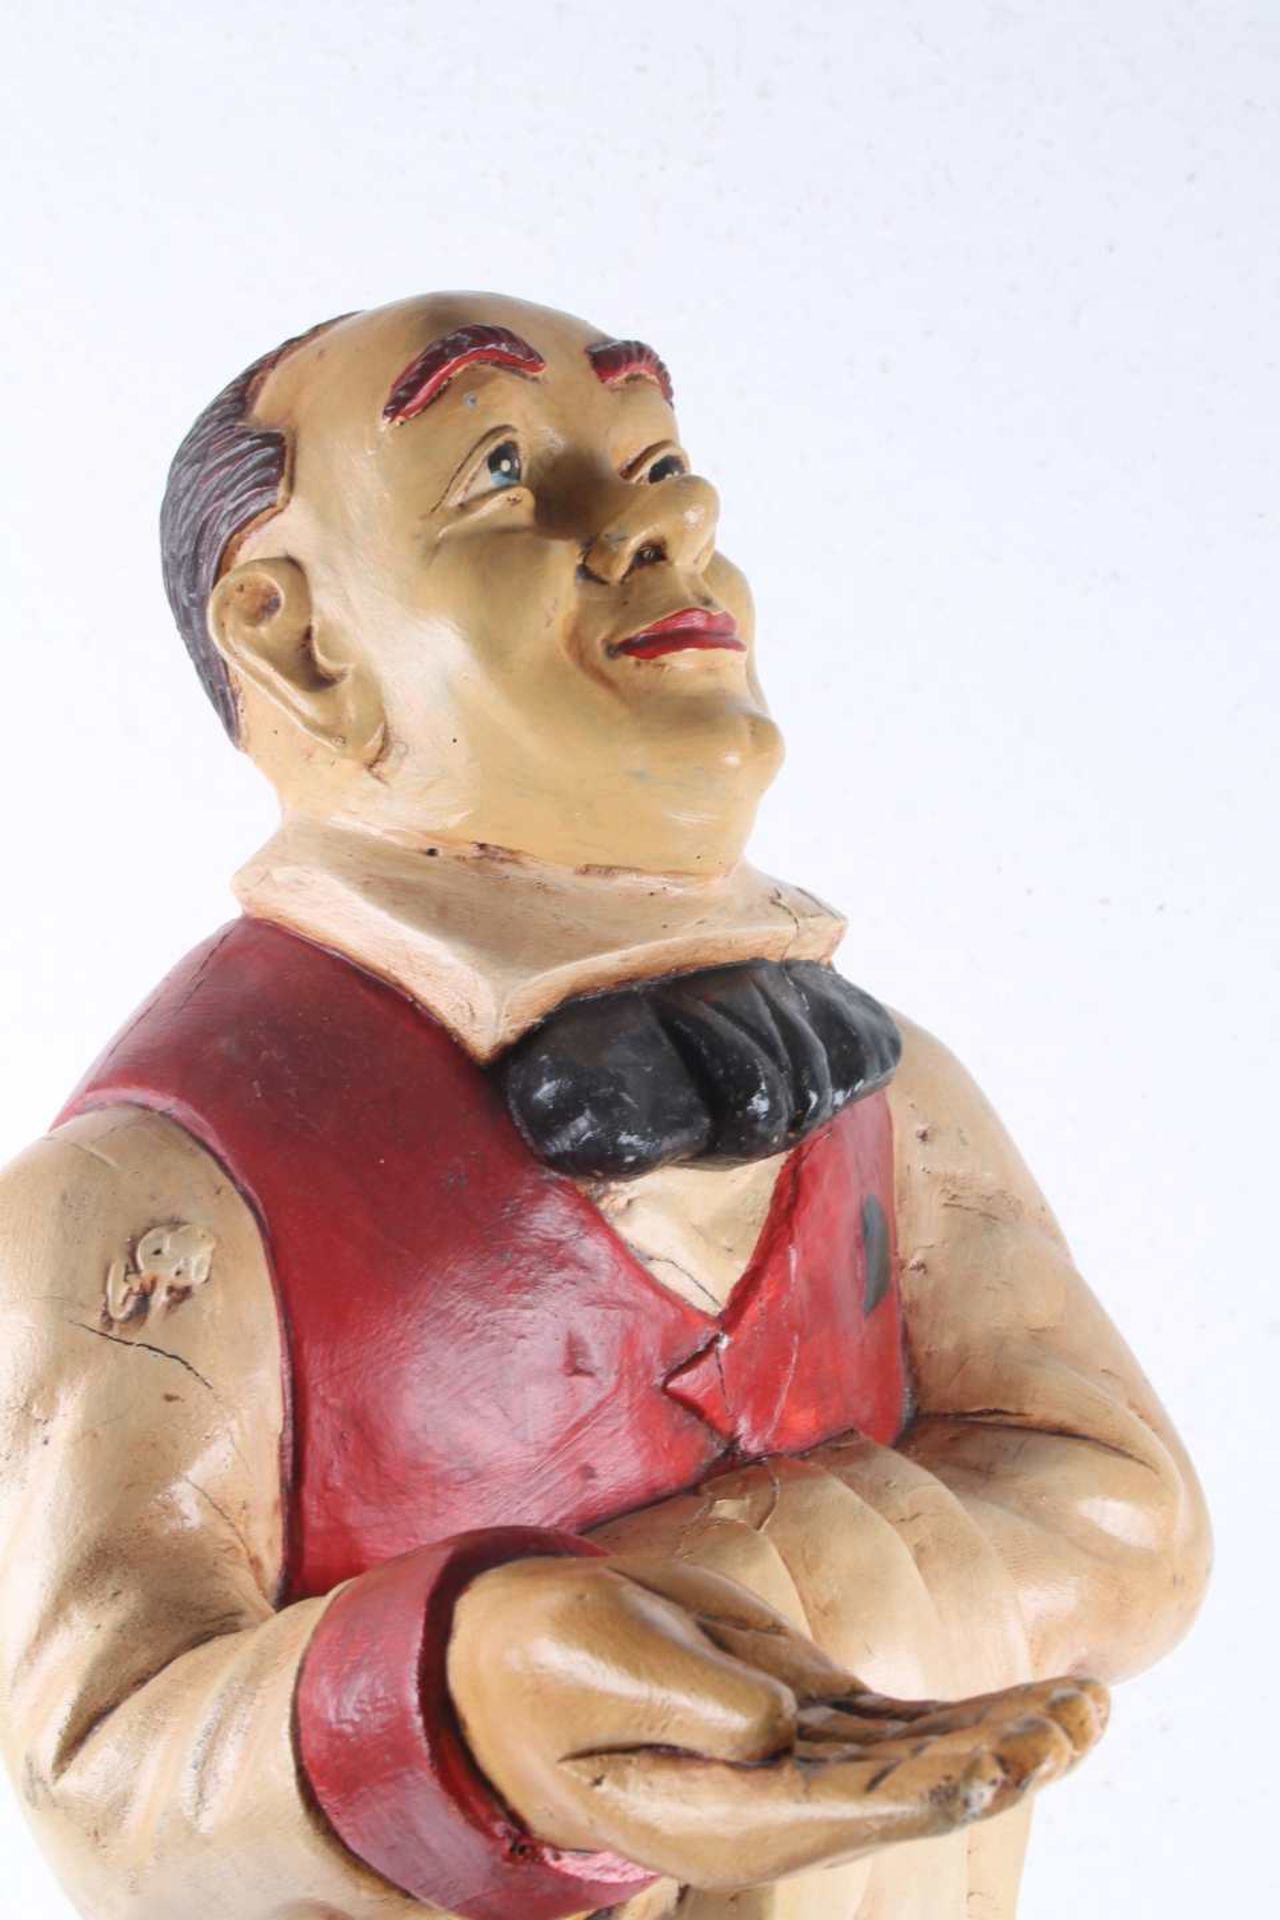 Großer Stiller Diener, wooden figure silent valet, - Image 3 of 4